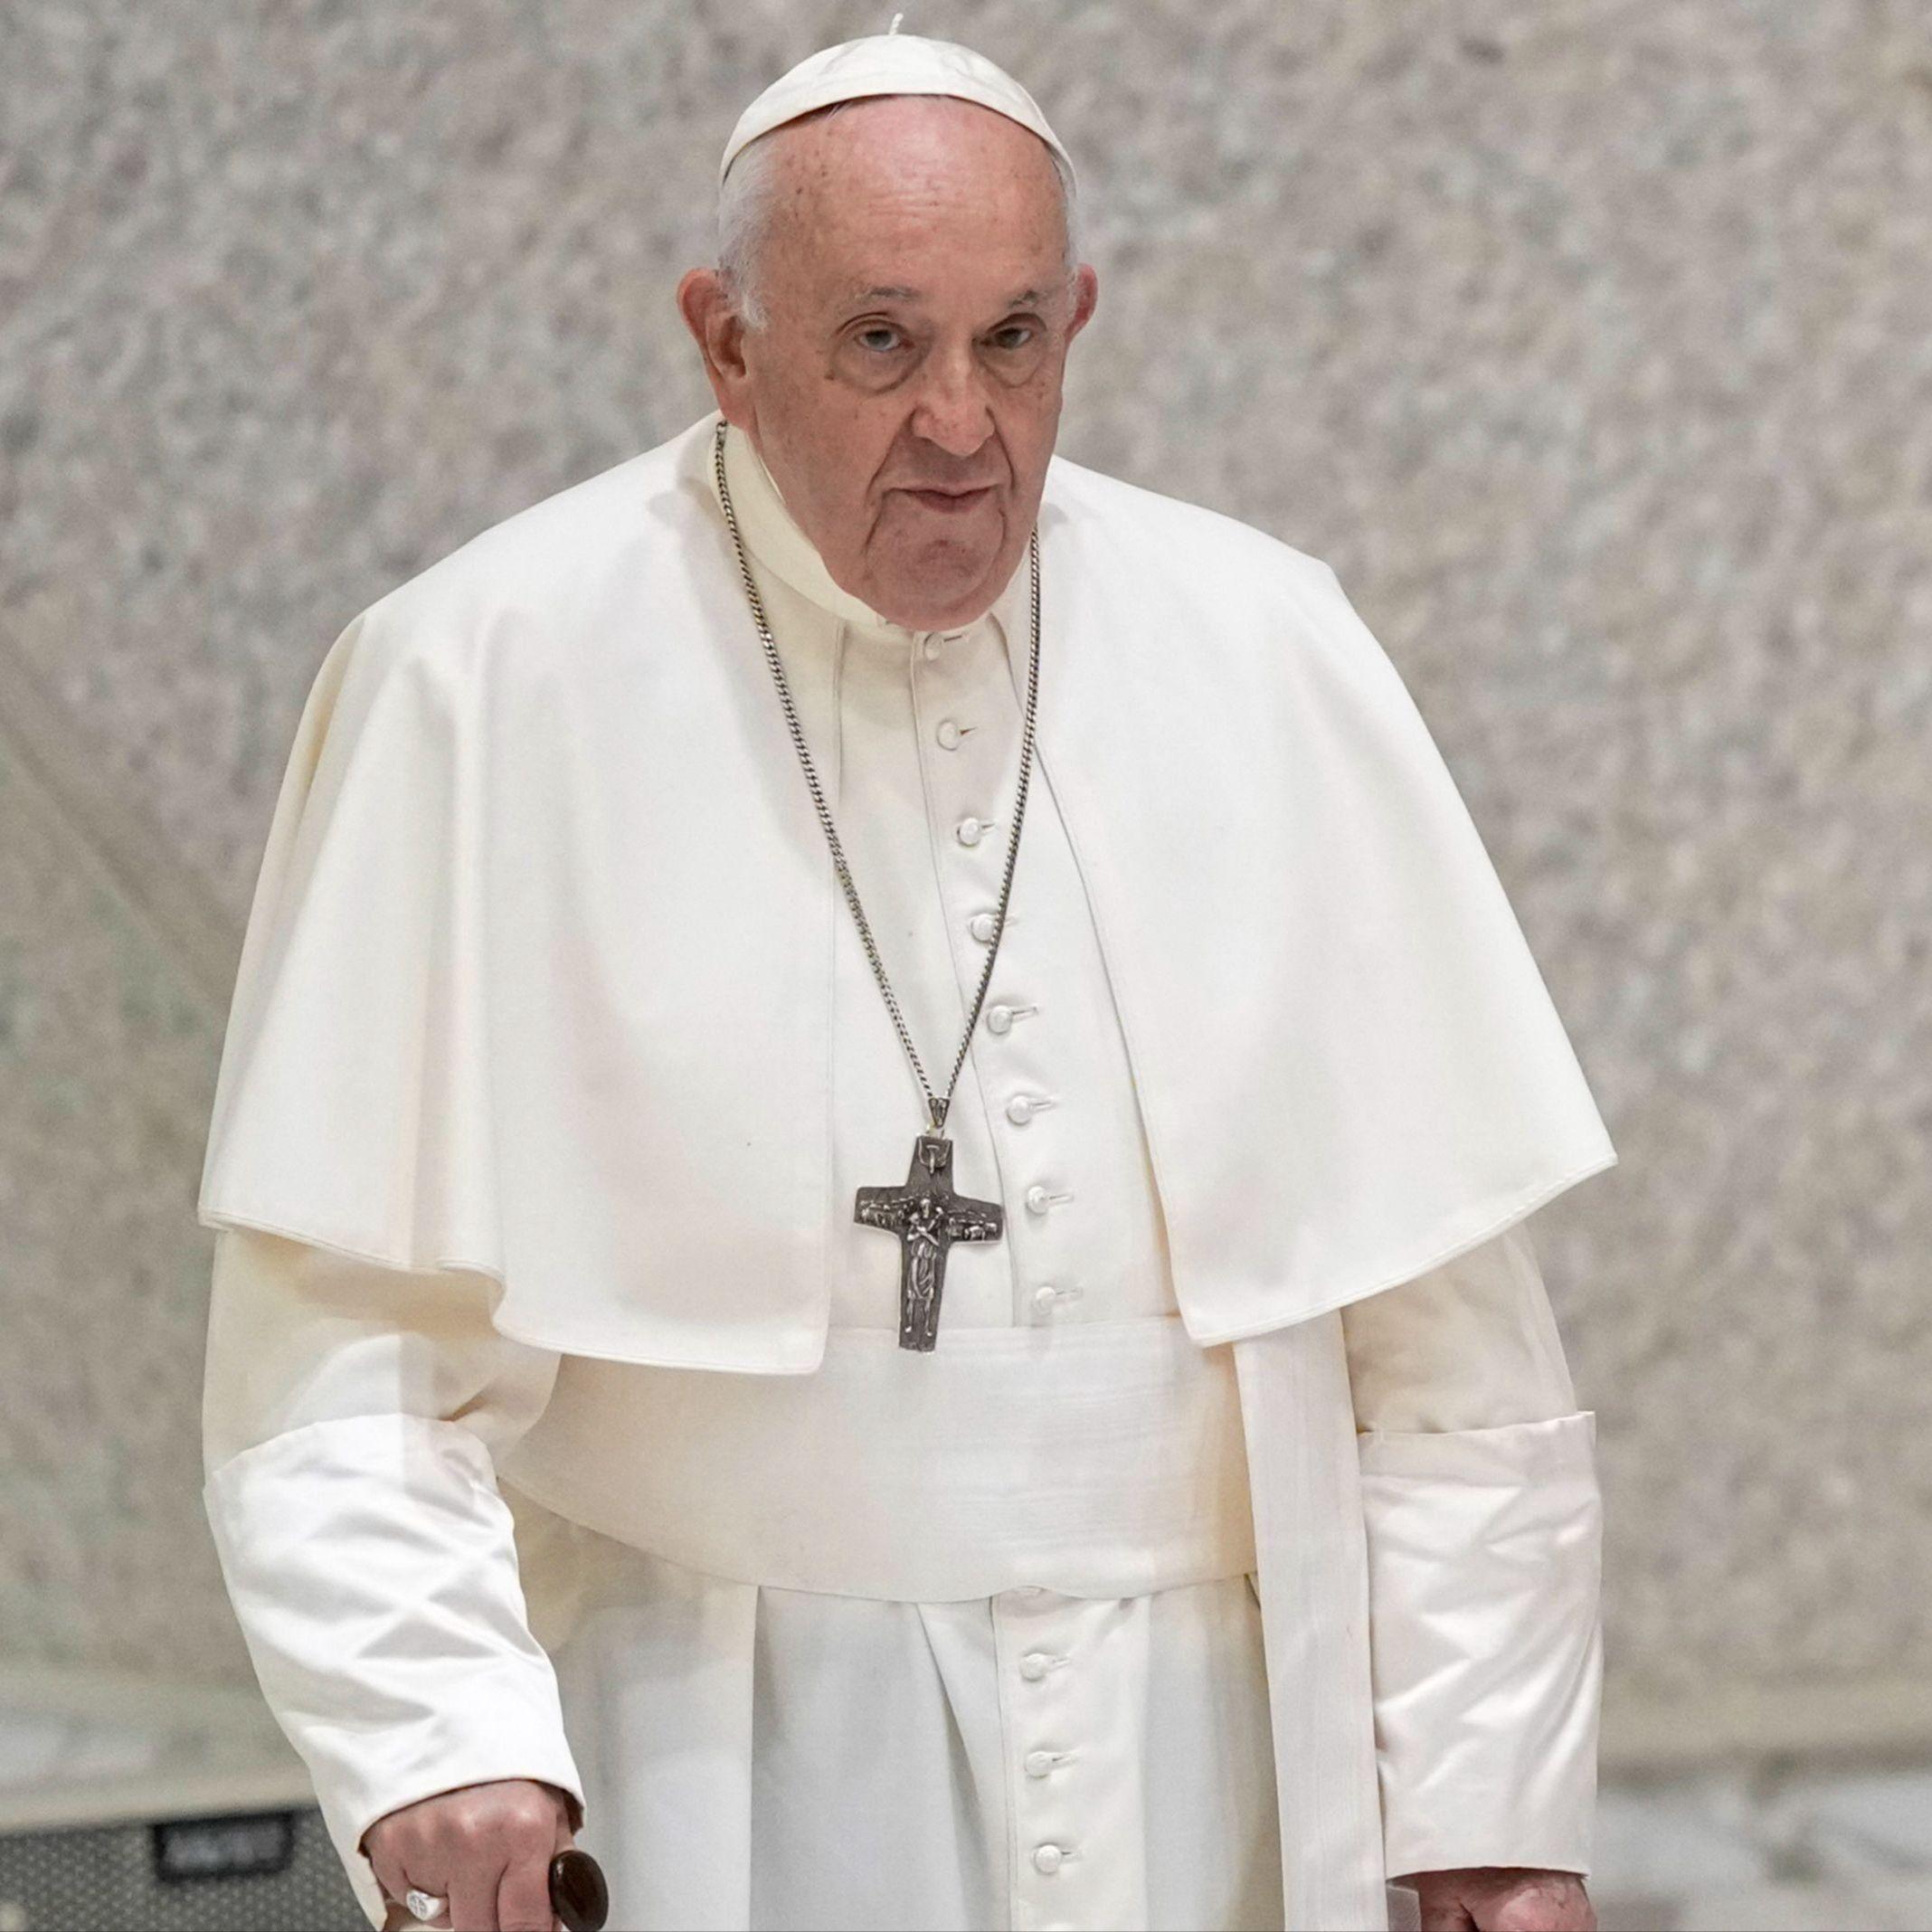 Papa Franjo: Nadam se da će se trenutni prekid vatre u Gazi nastaviti